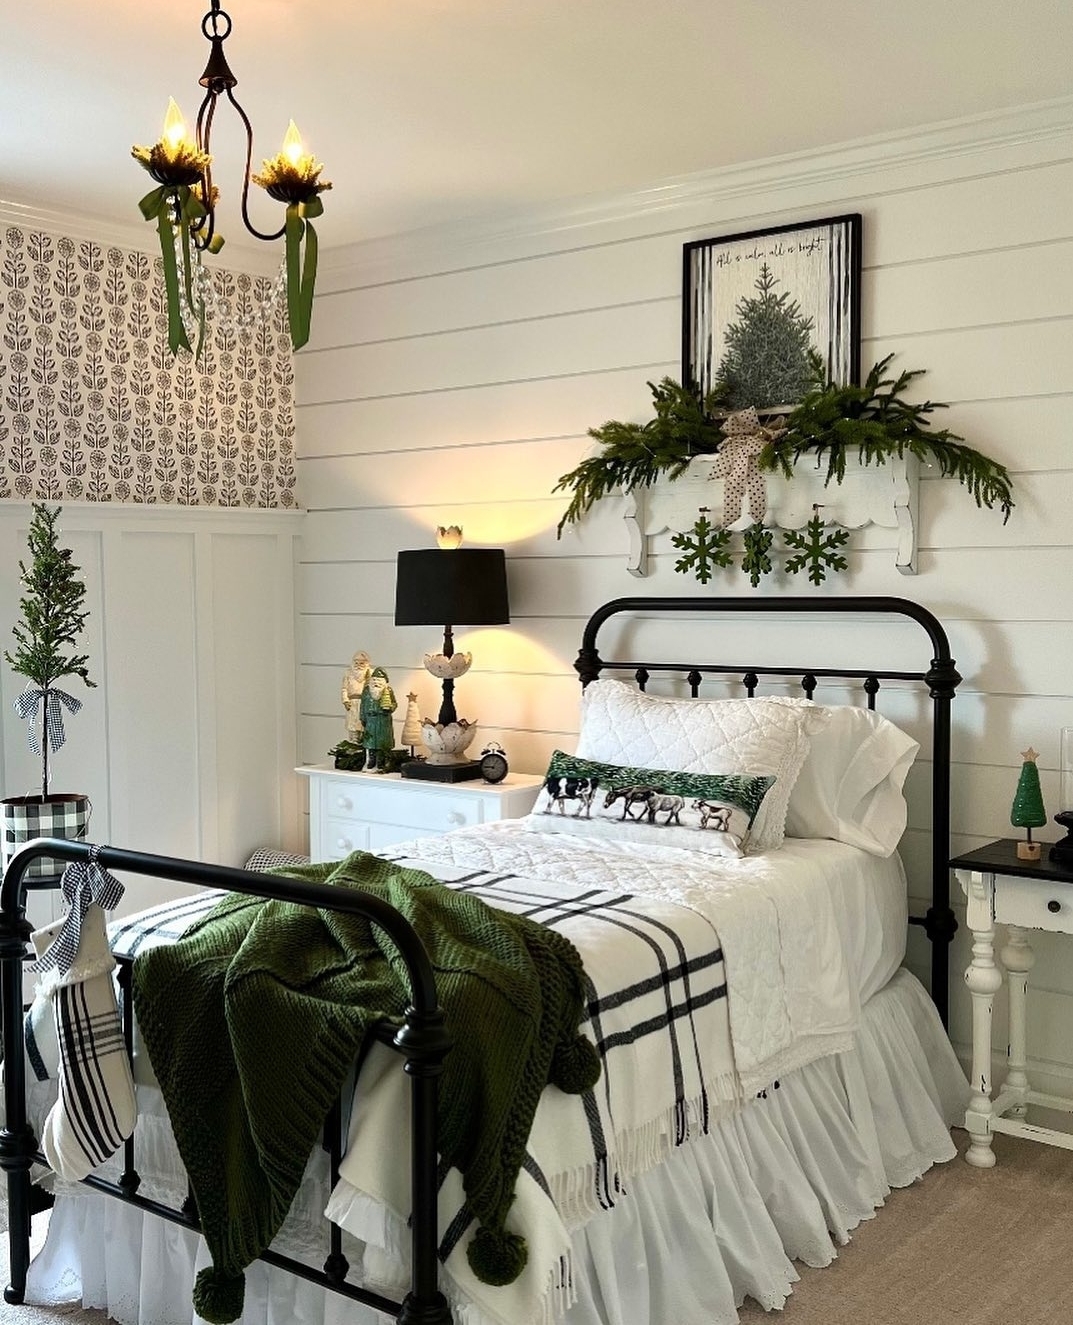 20 Cozy Rustic Winter Bedroom Decor Ideas - Talkdecor